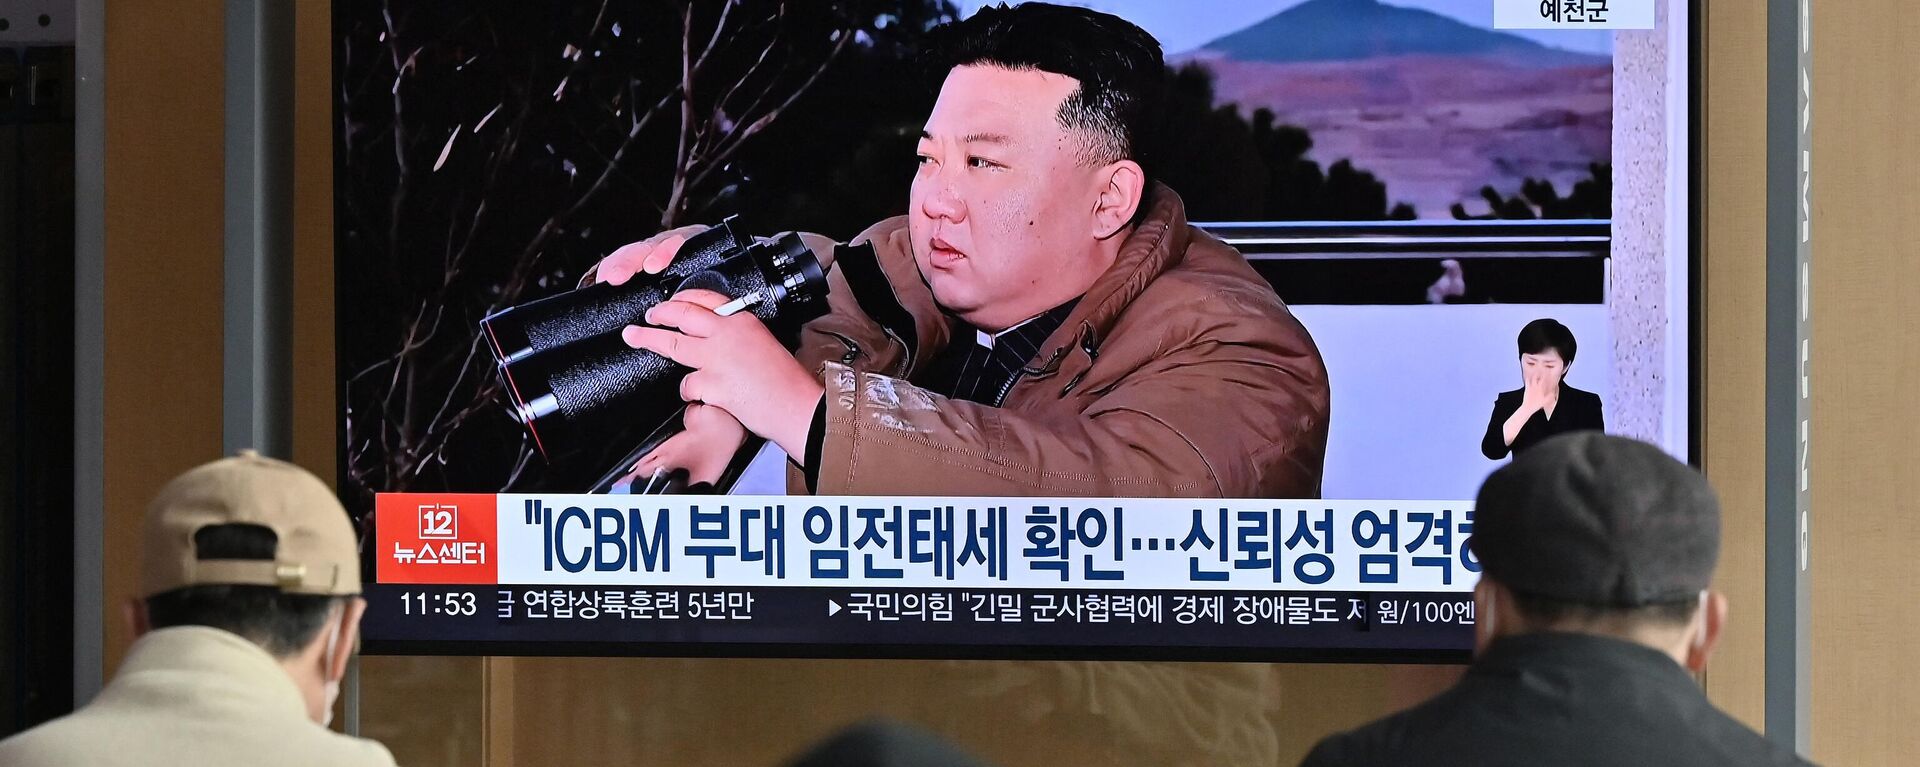 Varias personas observan una pantalla de televisión que muestra una imagen del líder de Corea del Norte, Kim Jong Un, presenciando el disparo de prueba de un misil balístico intercontinental Hwasong-17, en una estación de ferrocarril de Seúl, el 17 de marzo de 2023 - Sputnik Mundo, 1920, 30.05.2023